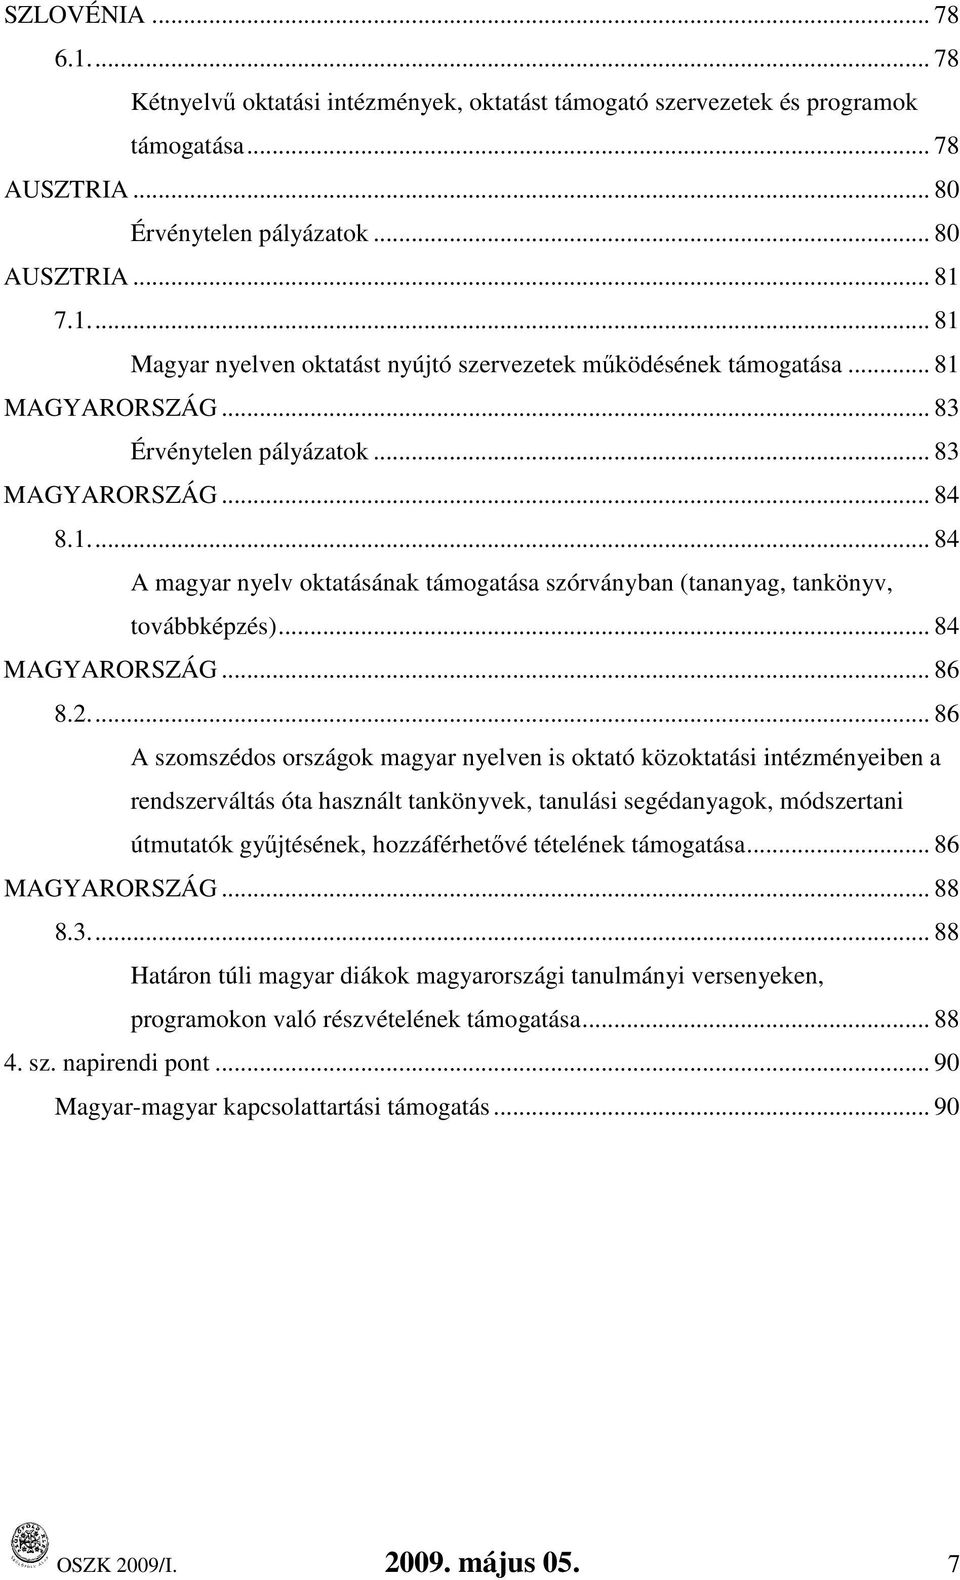 .. 86 A szomszédos országok magyar nyelven is oktató közoktatási intézményeiben a rendszerváltás óta használt tankönyvek, tanulási segédanyagok, módszertani útmutatók győjtésének, hozzáférhetıvé